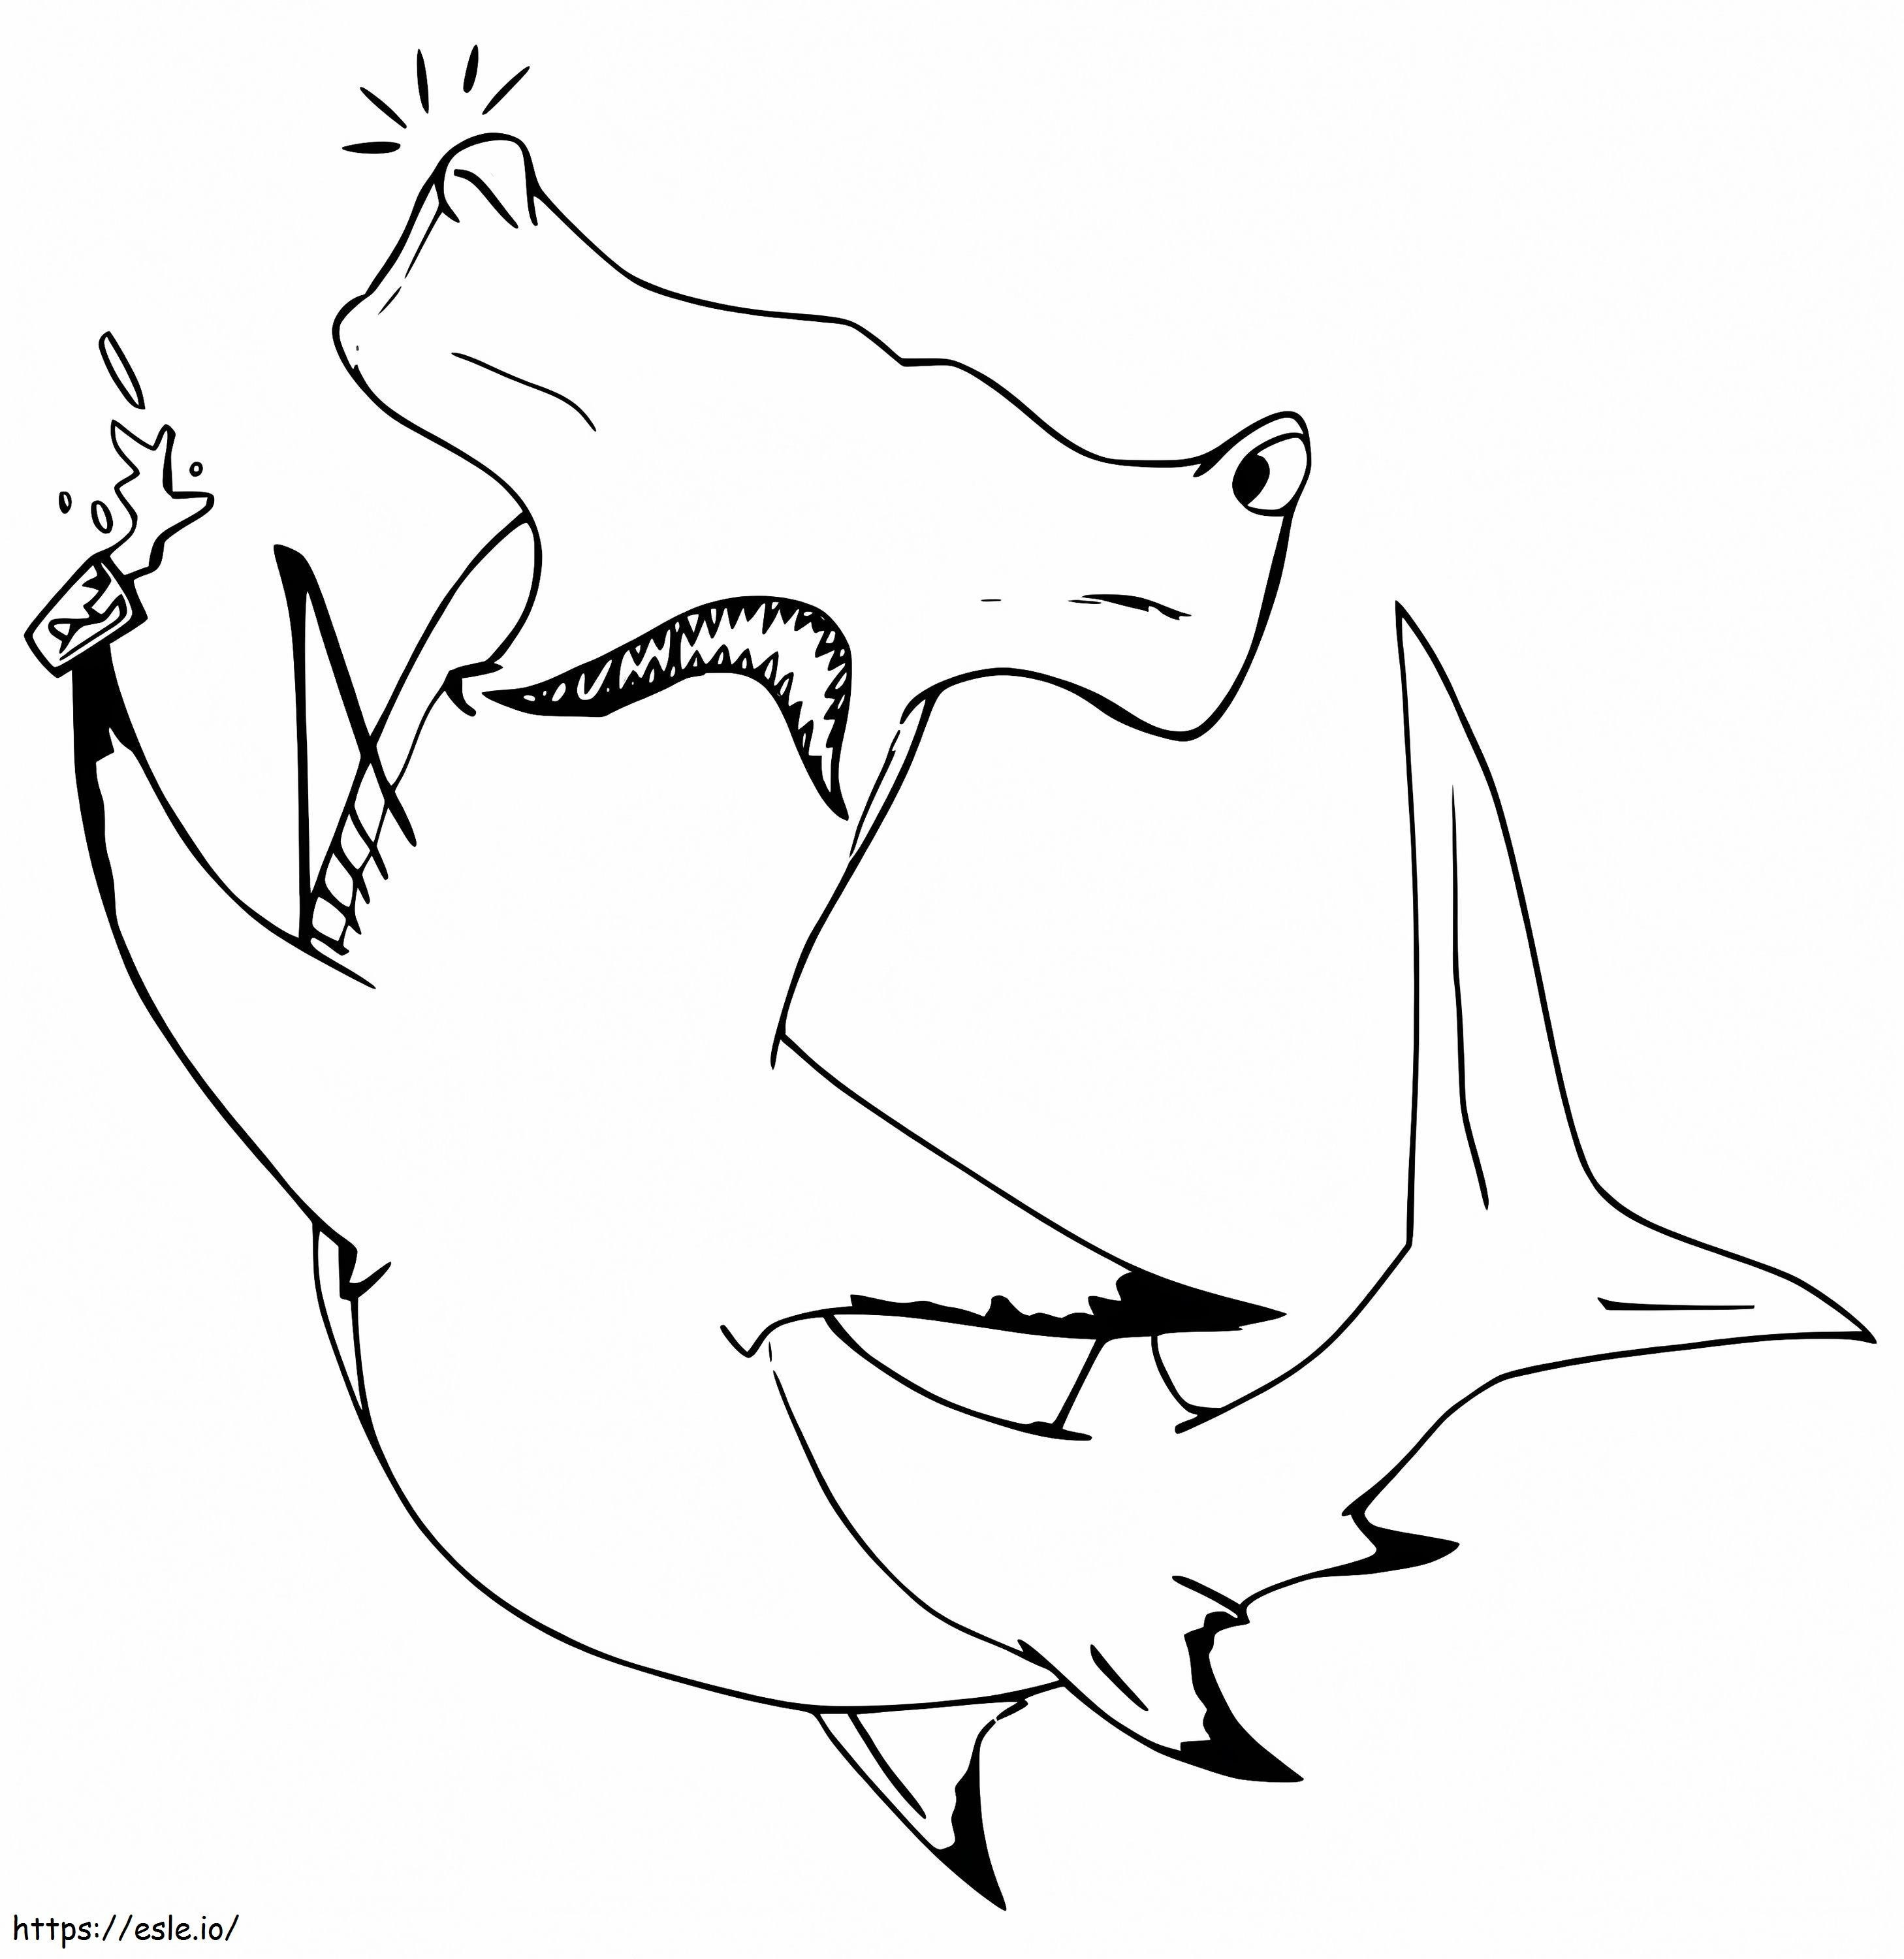 Tubarão-martelo de desenho animado para colorir